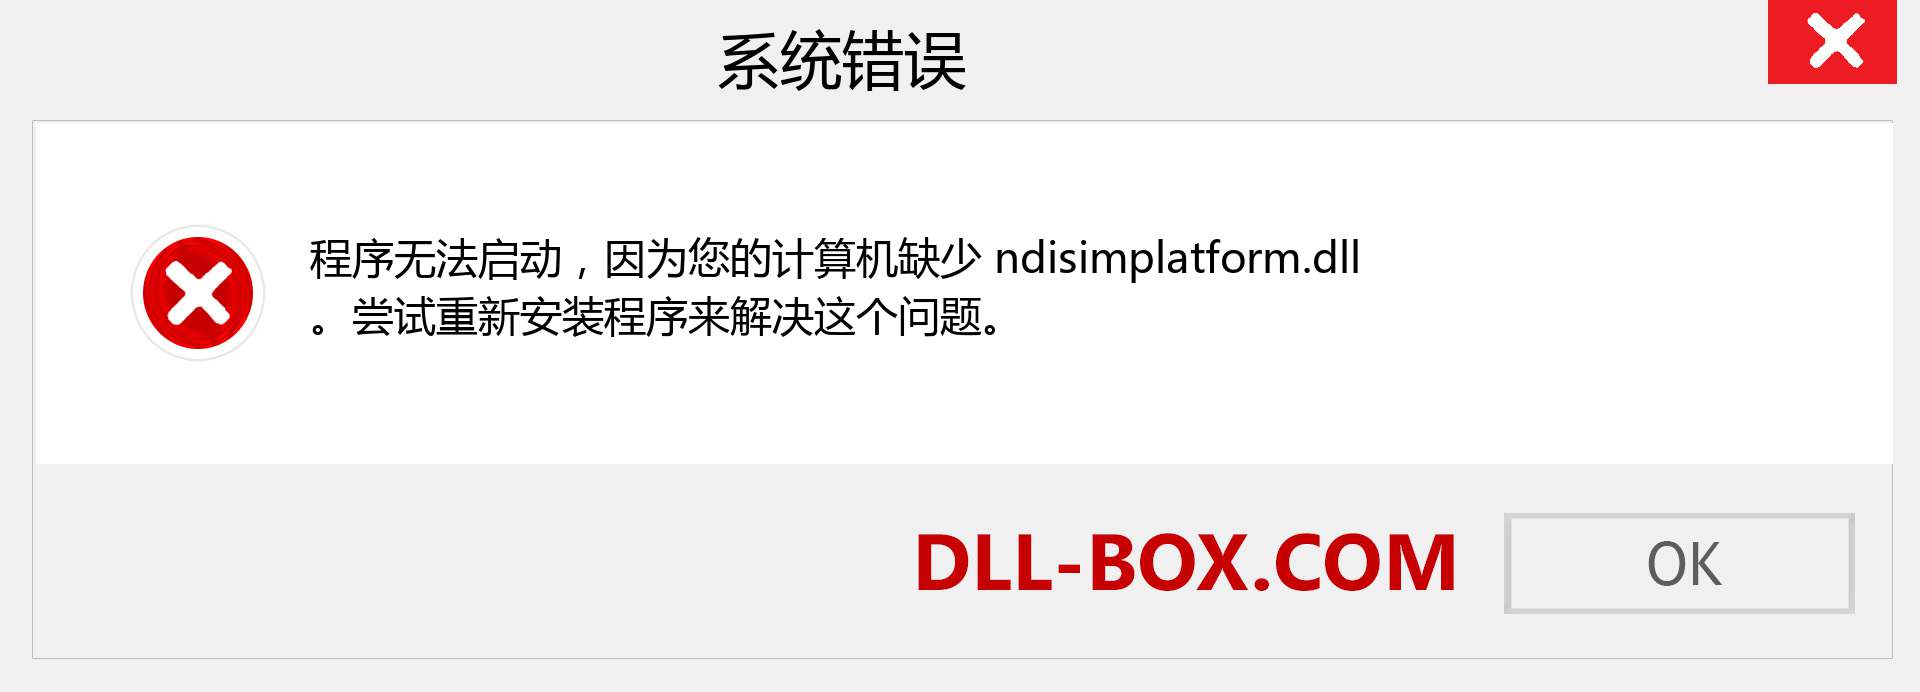 ndisimplatform.dll 文件丢失？。 适用于 Windows 7、8、10 的下载 - 修复 Windows、照片、图像上的 ndisimplatform dll 丢失错误